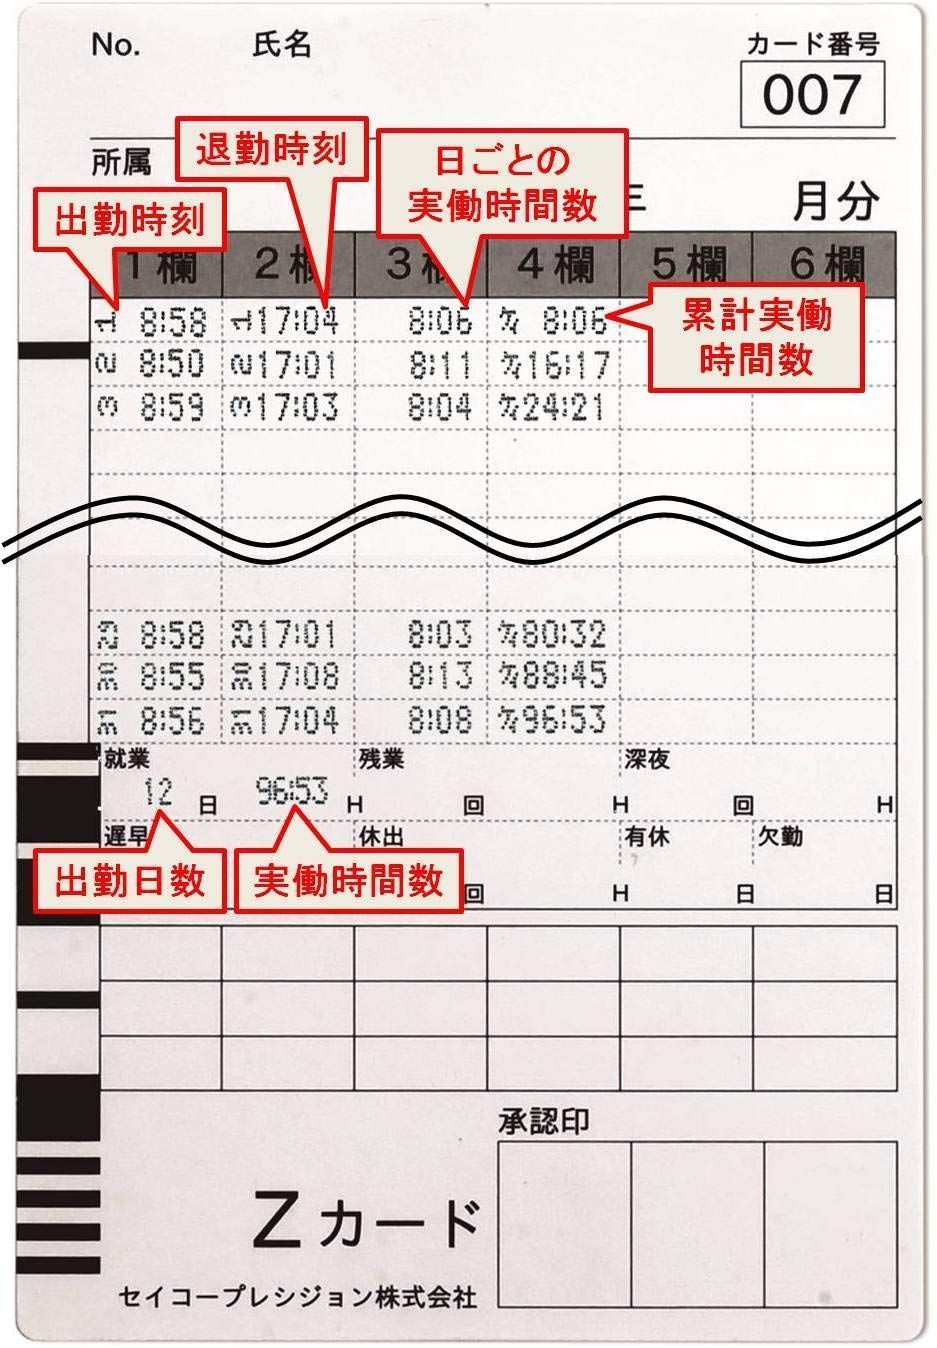 セイコープレシジョン タイムレコーダー QR-4550ホワイト - 3